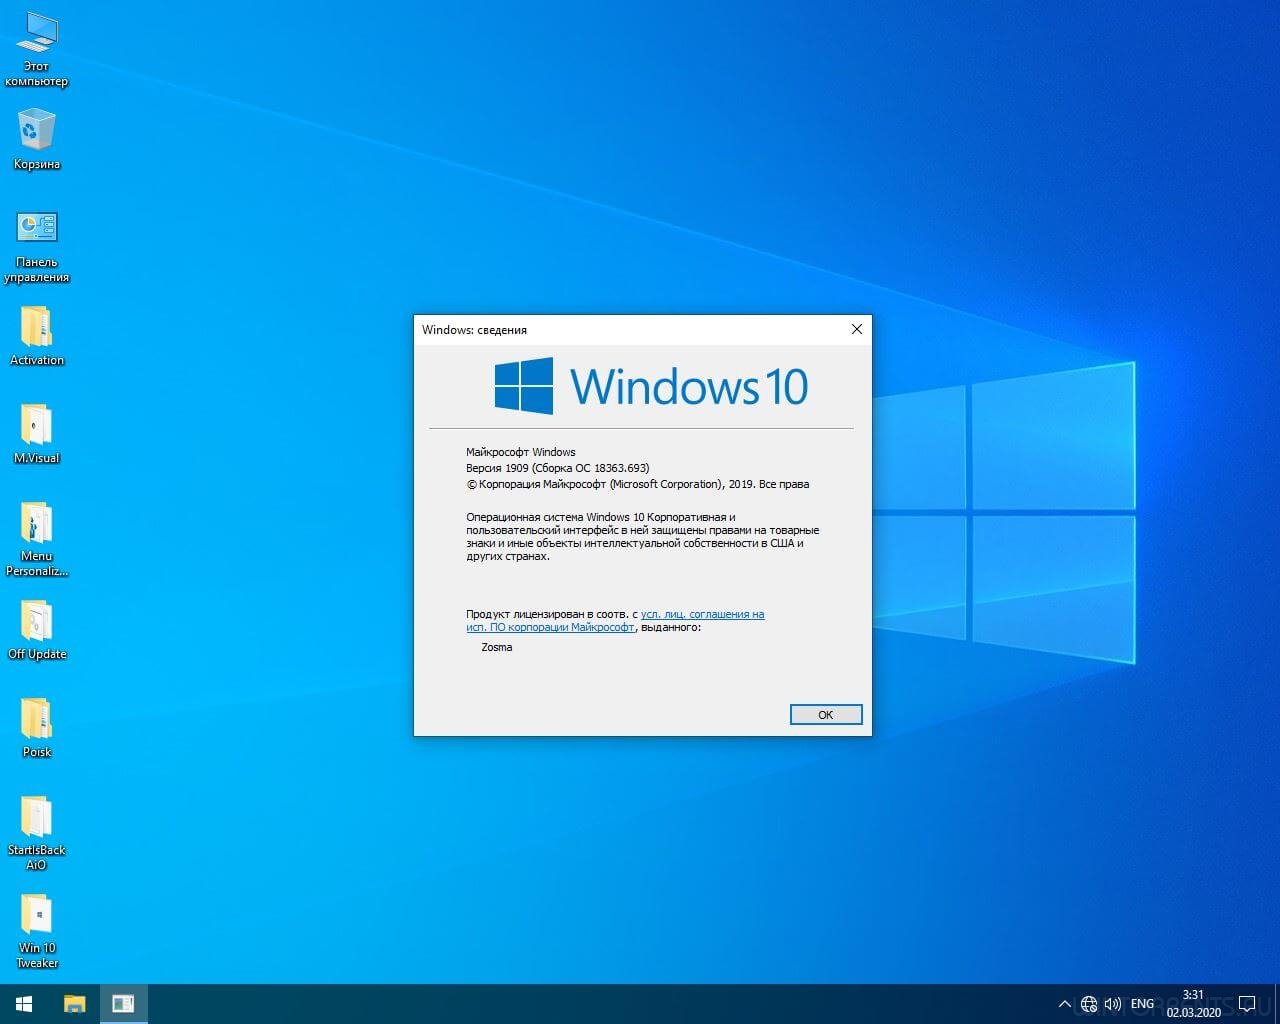 Windows 10 Enterprise (x64) Micro 1909.18363.693 by Zosma